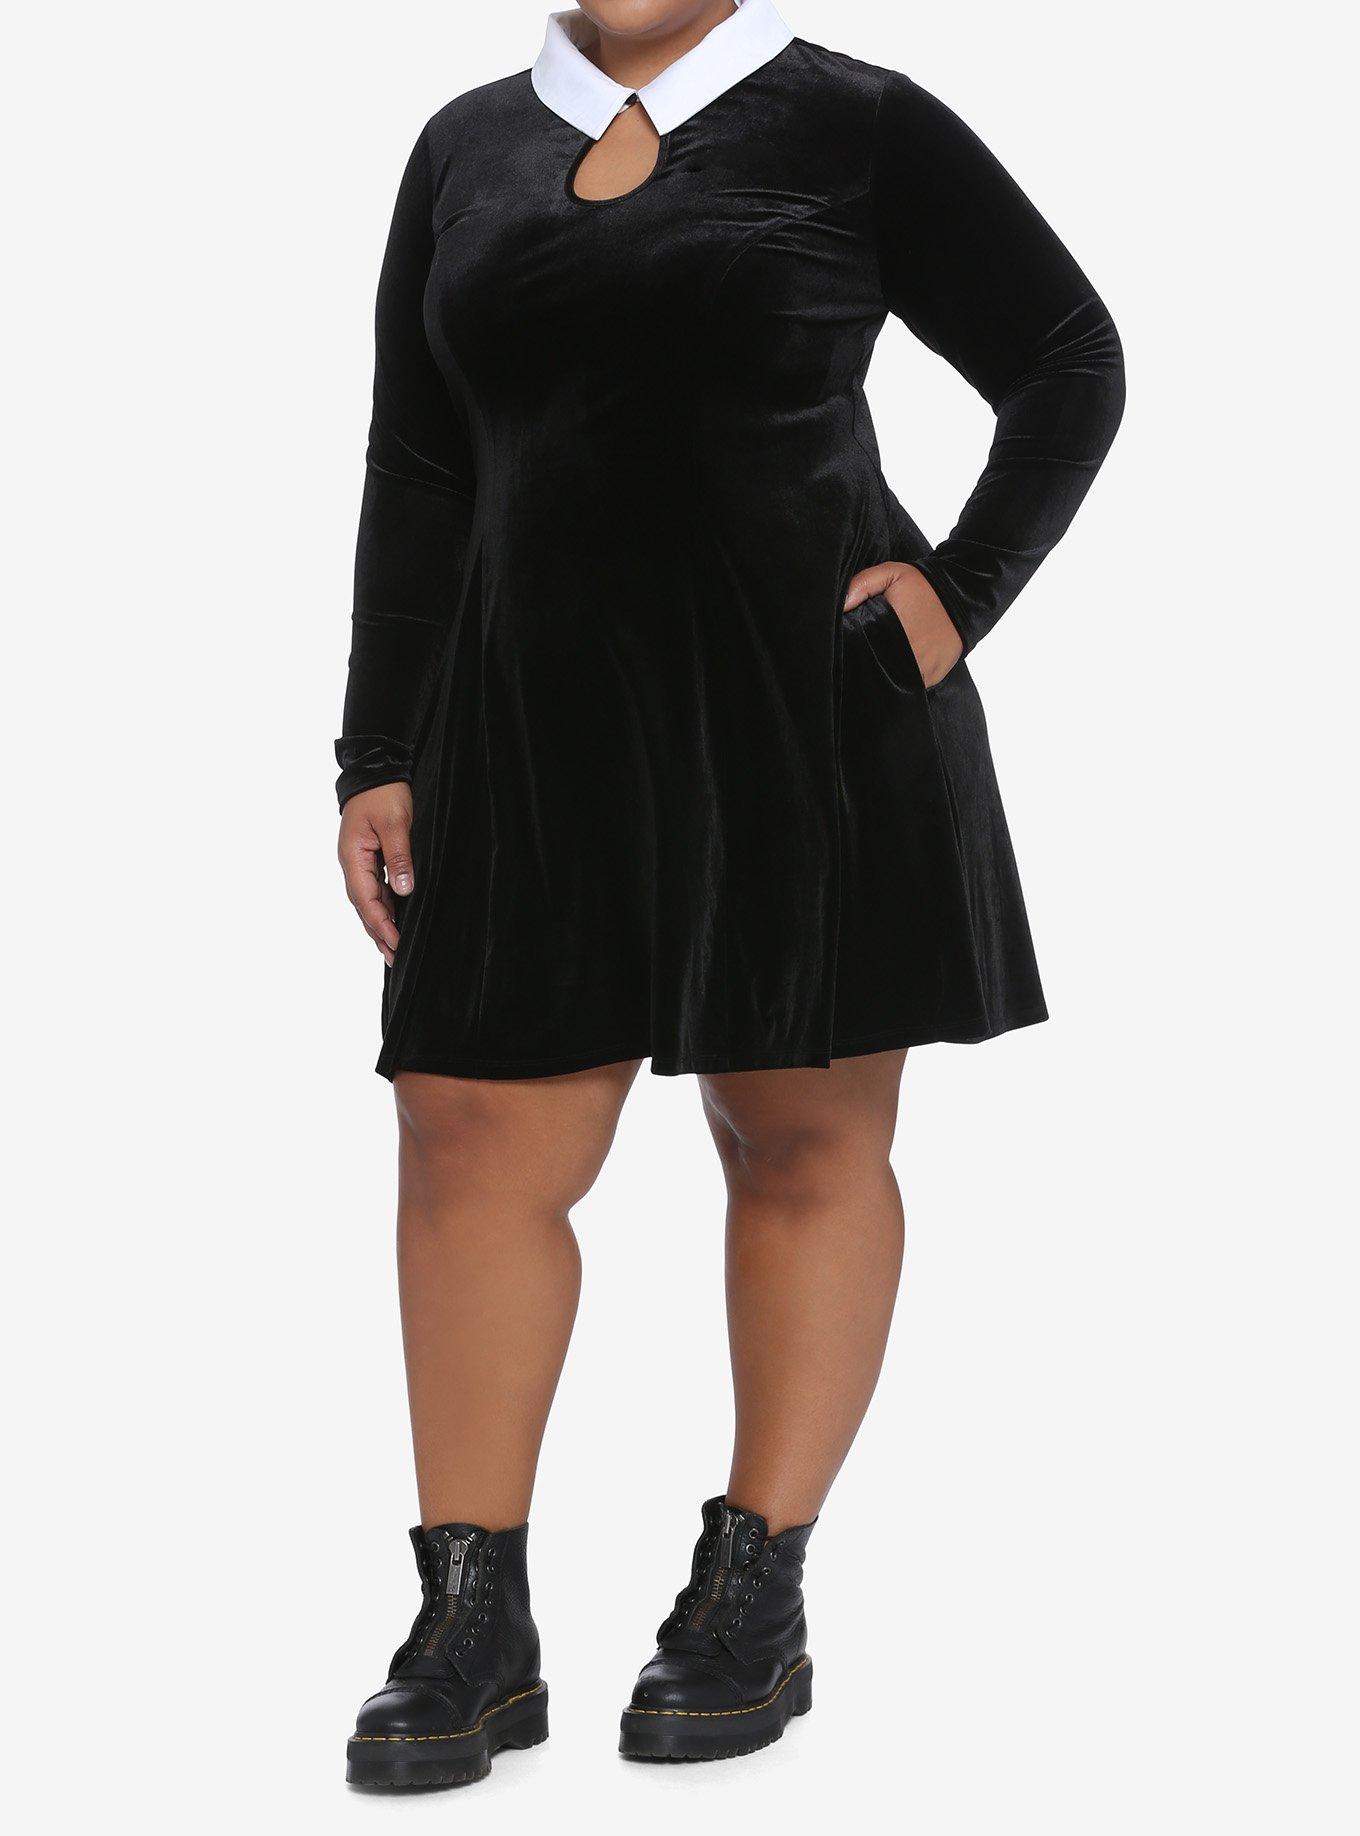 Black Velvet Keyhole Long-Sleeve Dress Plus Size, BLACK  WHITE, alternate